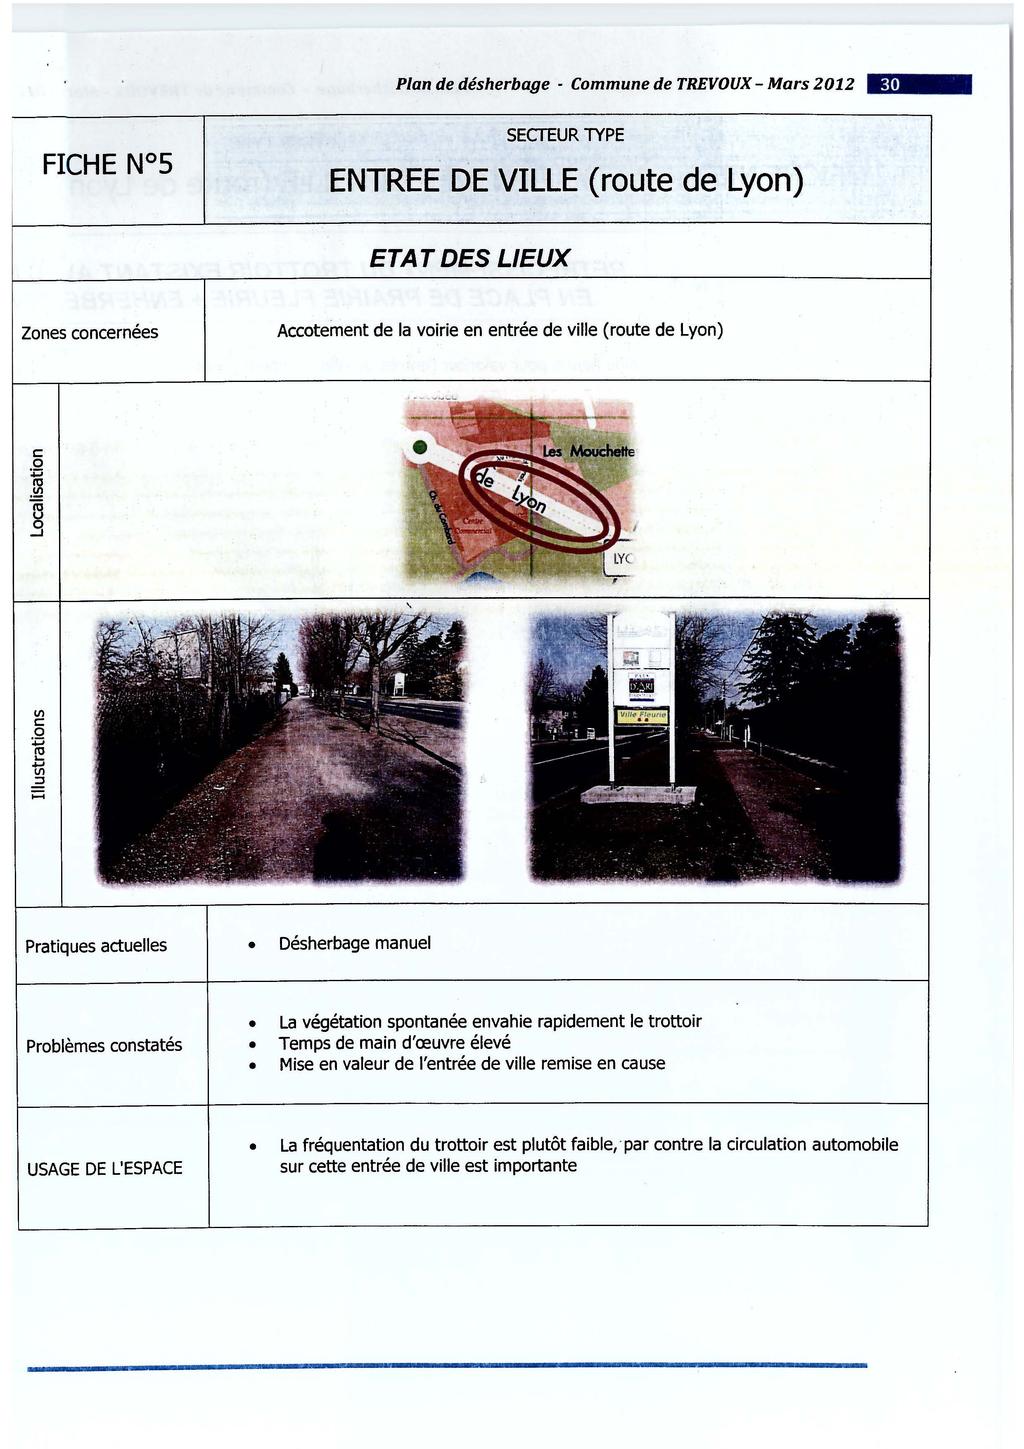 Plan de désherbage - Commune de TREVOUX - Mars 2012 - SECTEUR TYPE ENTREE DE VILLE (route de Lyon) ETAT DES LIEUX Zones concernées Accotement de la voirie en entrée de ville (route de Lyon) Pratiques